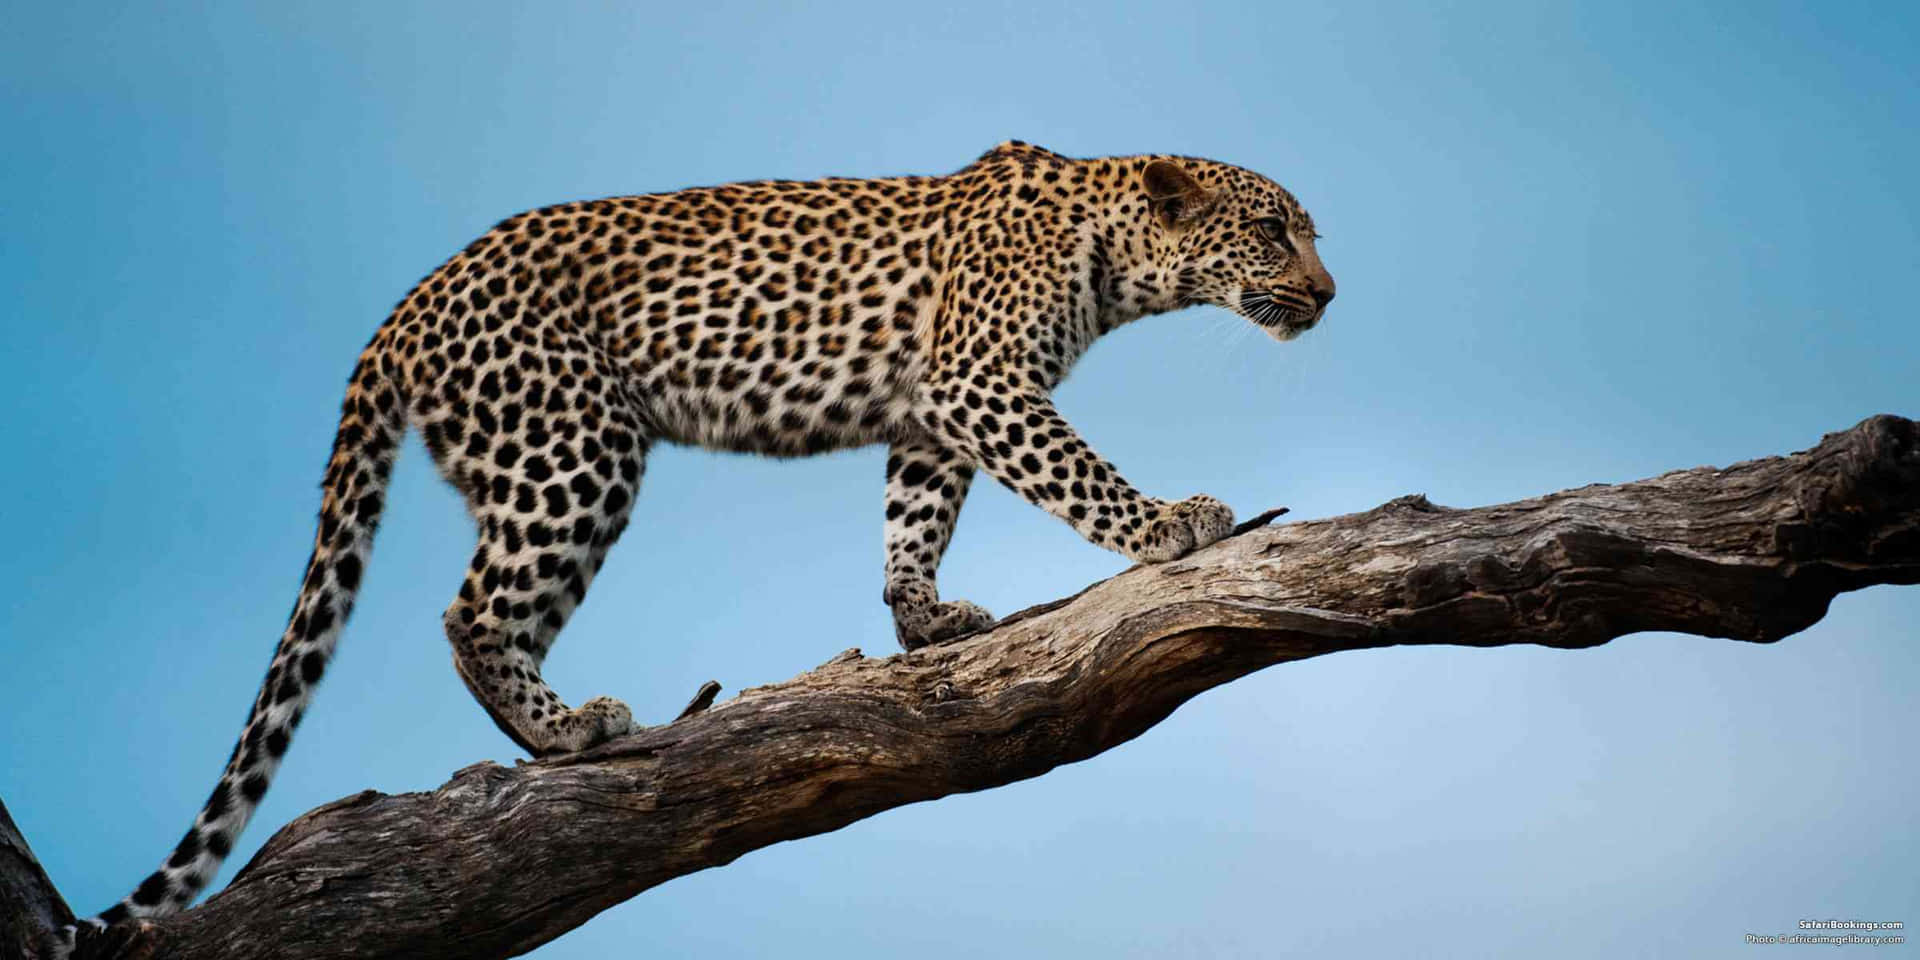 Imagende Un Leopardo Caminando En Una Rama De Árbol.